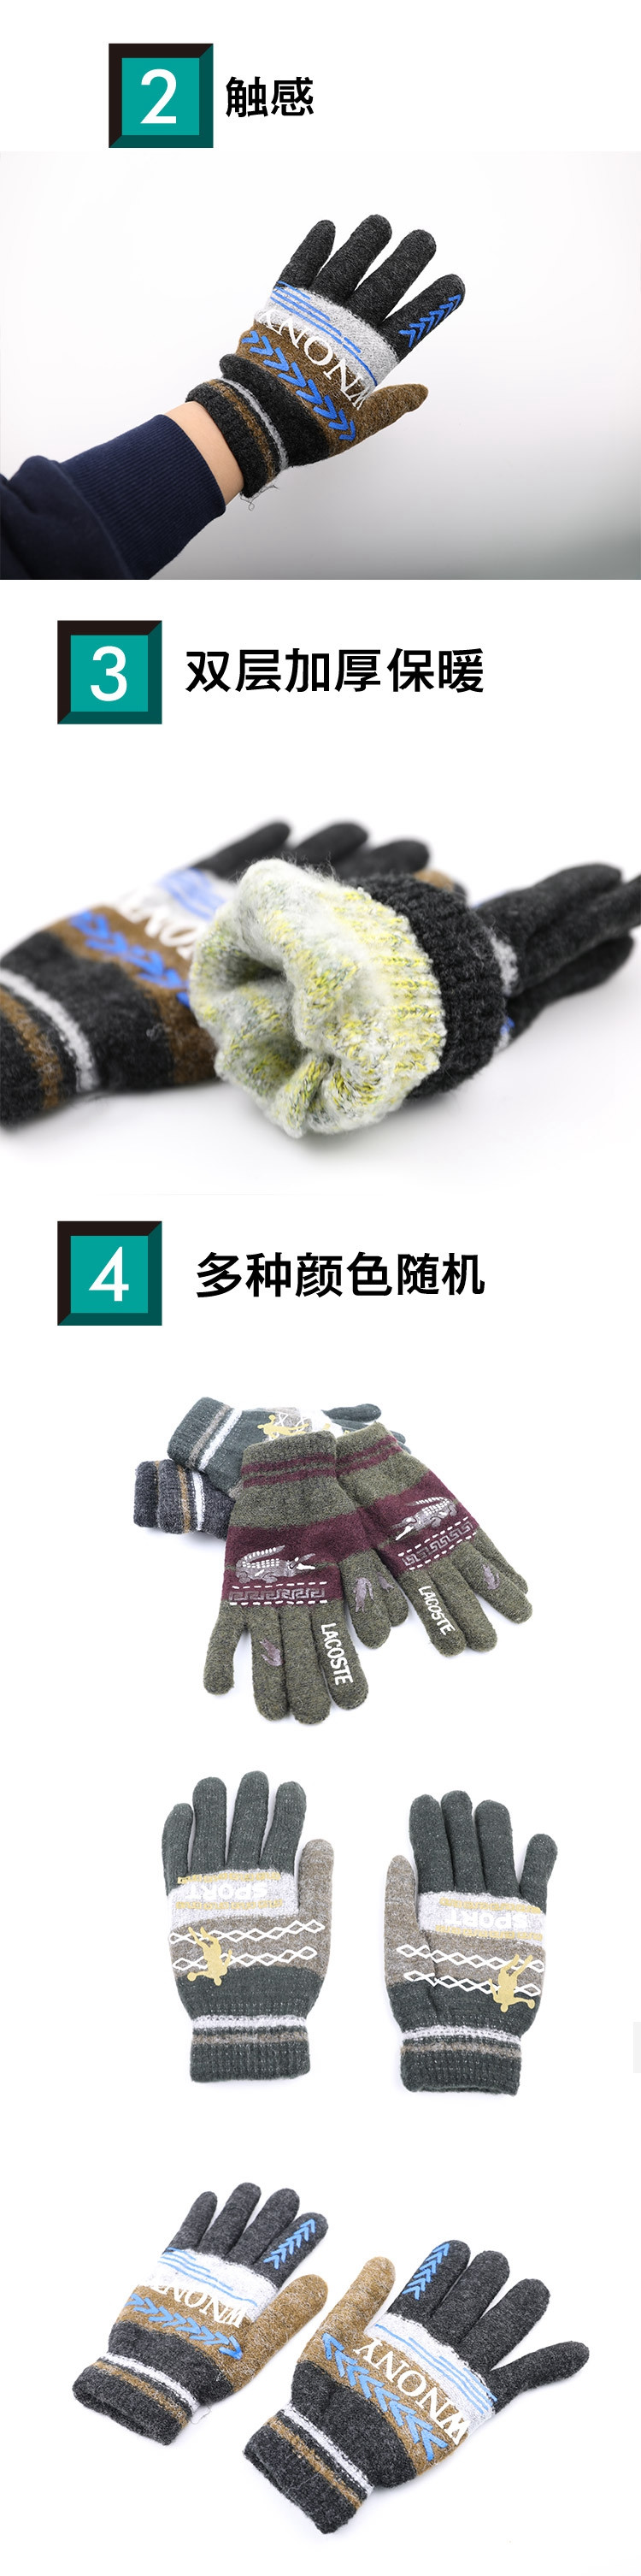 亚佳利 男士休闲手套 均码 颜色随机 手套秋冬季针织五指全指保暖防寒学生